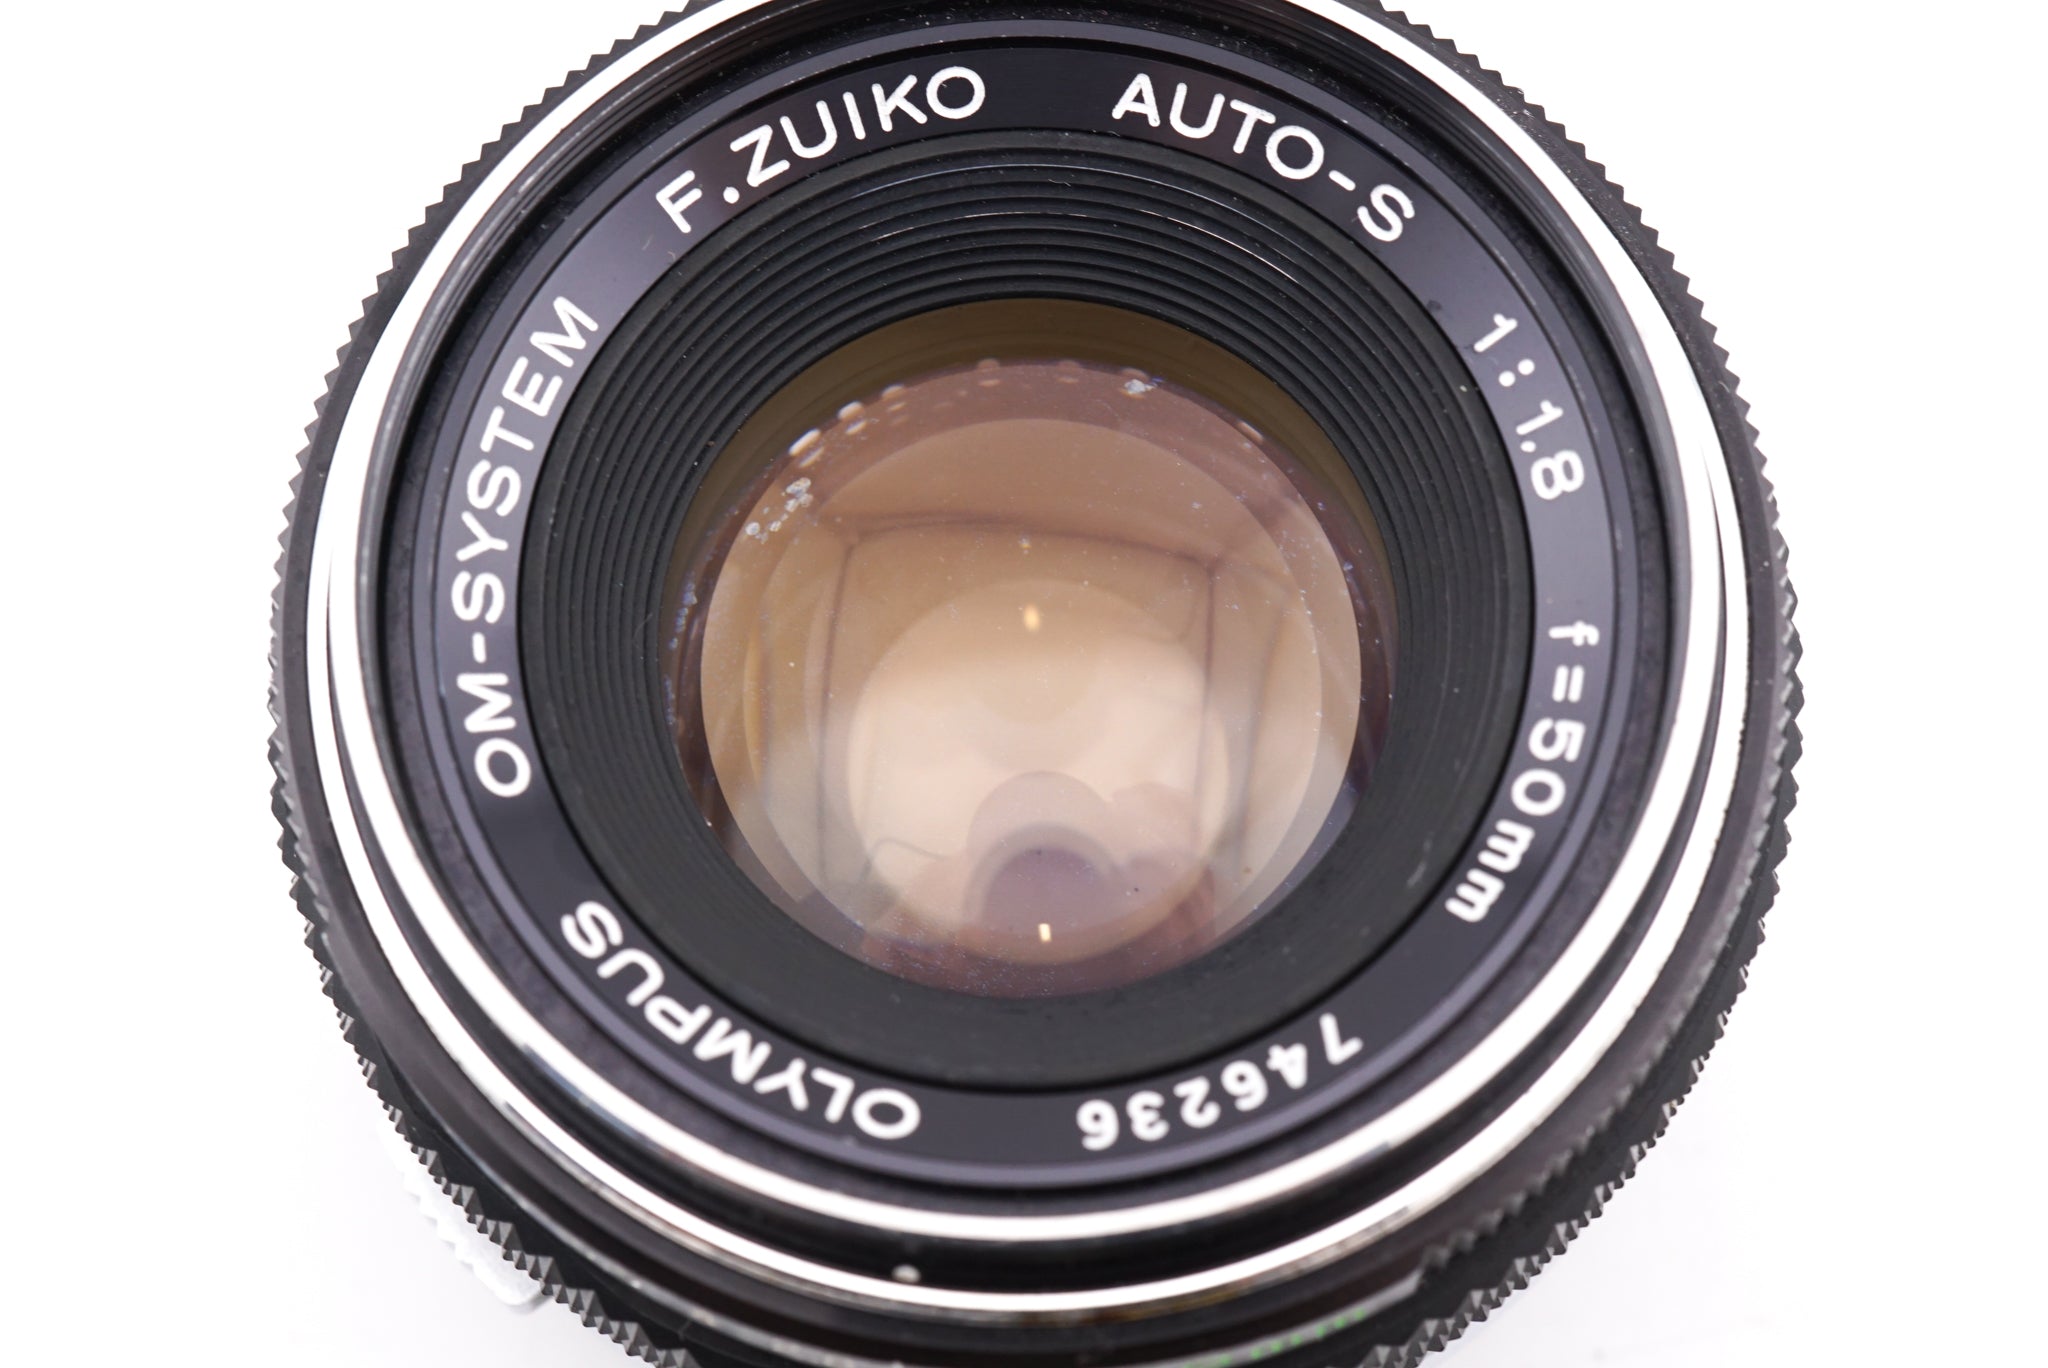 Olympus OM-SYSTEM F.Zuiko Auto-S 50mm f1.8 1:1.8-